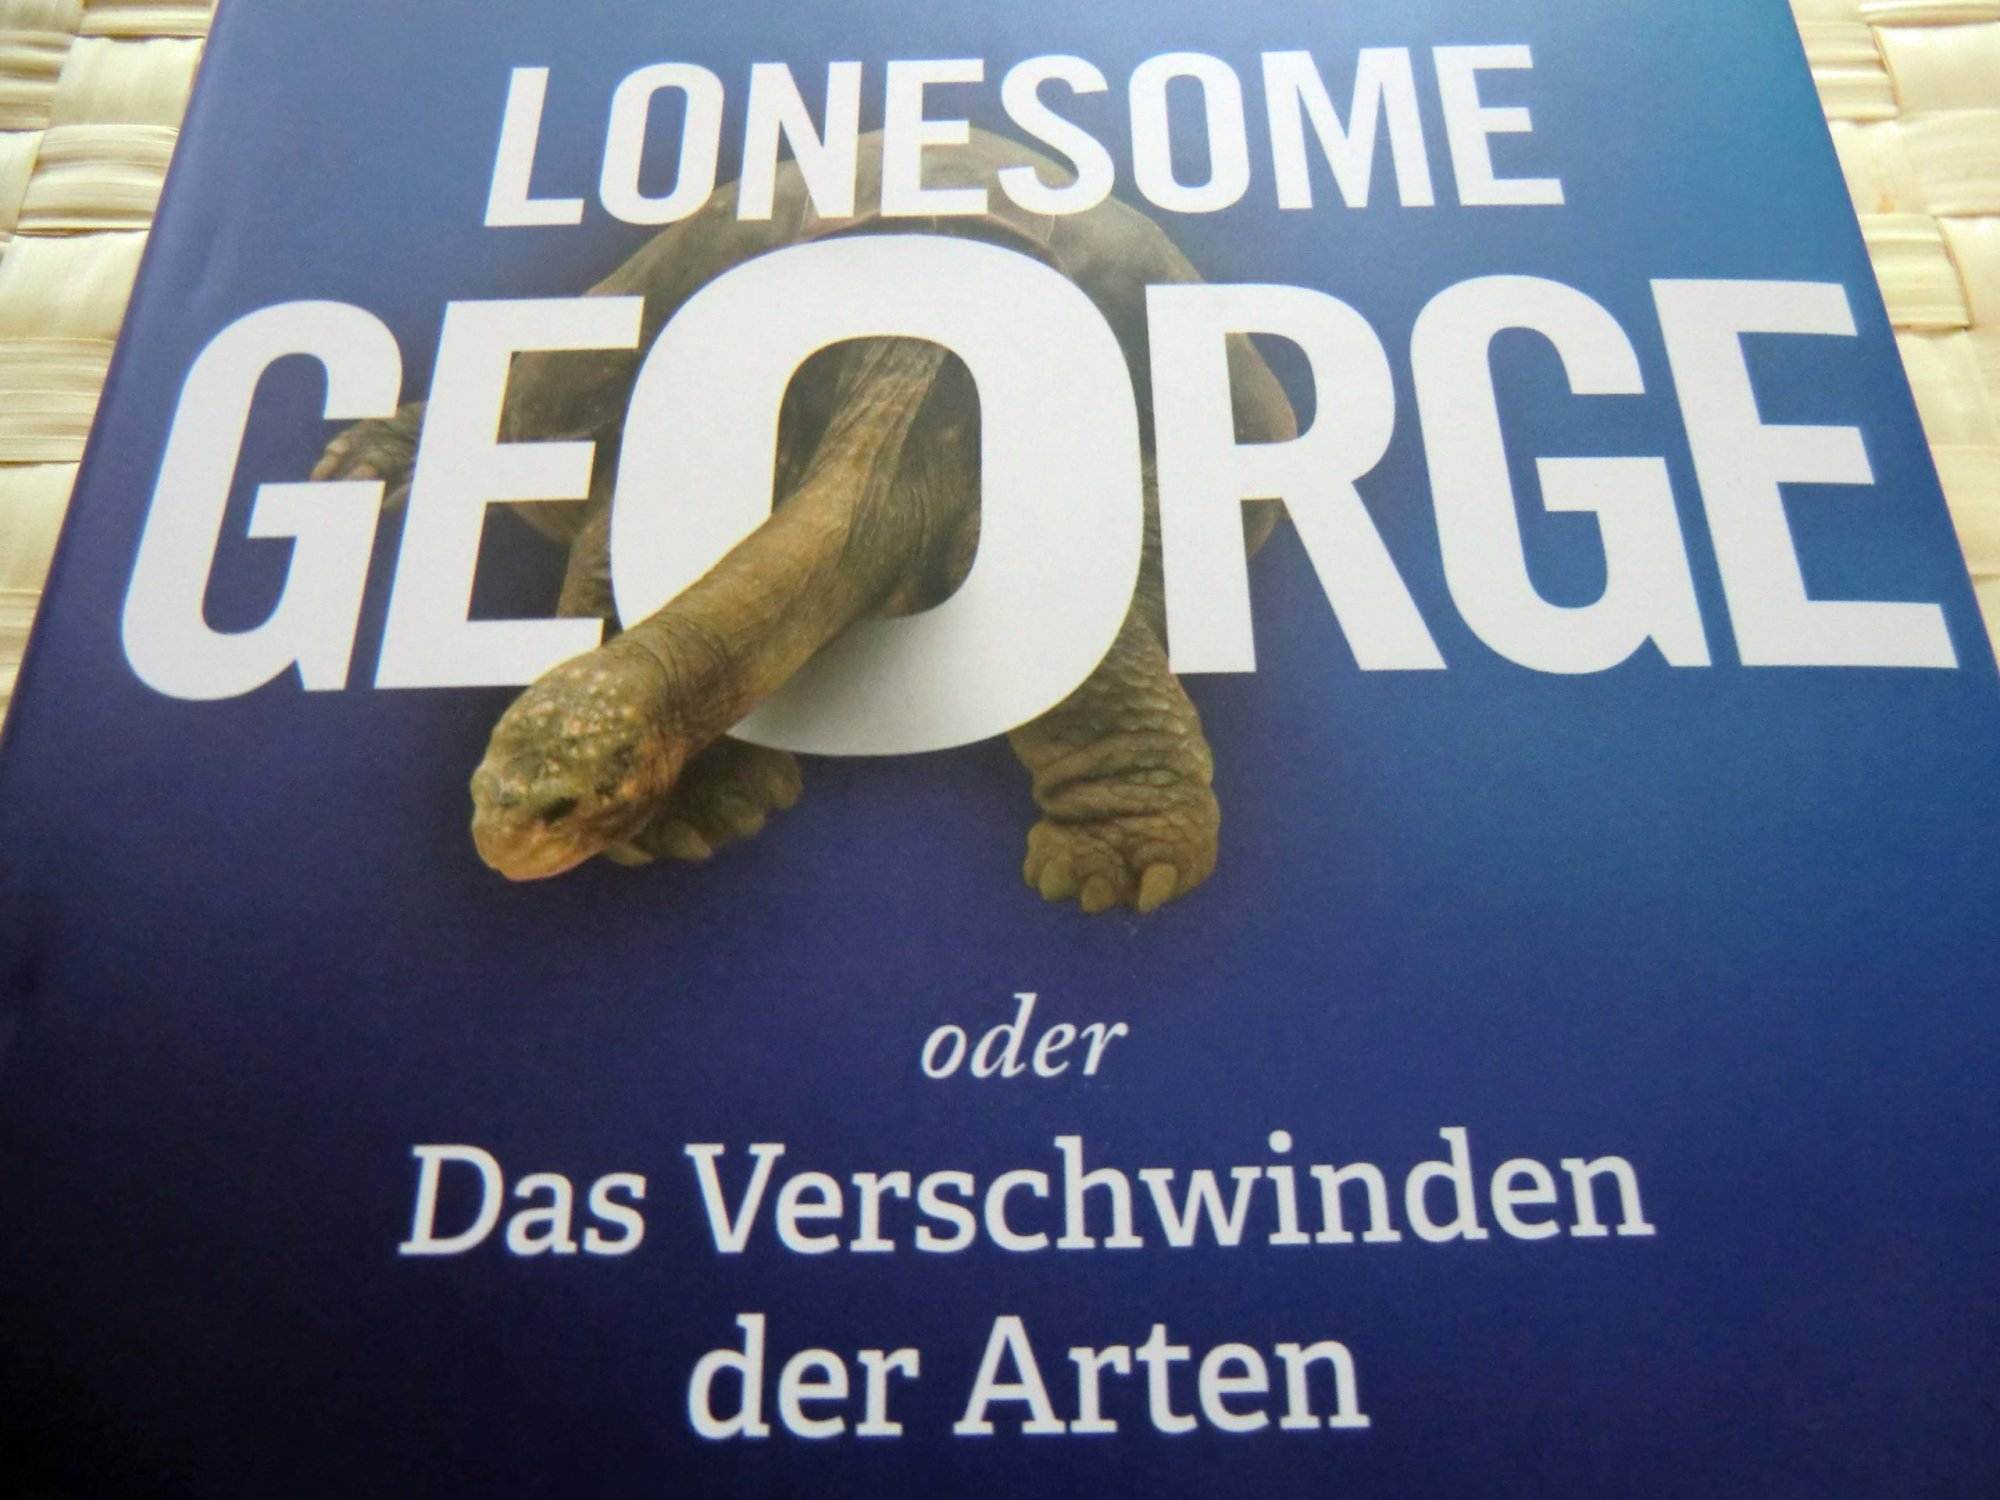 Buch über die faszinierende Geschichte von Lonesome George.